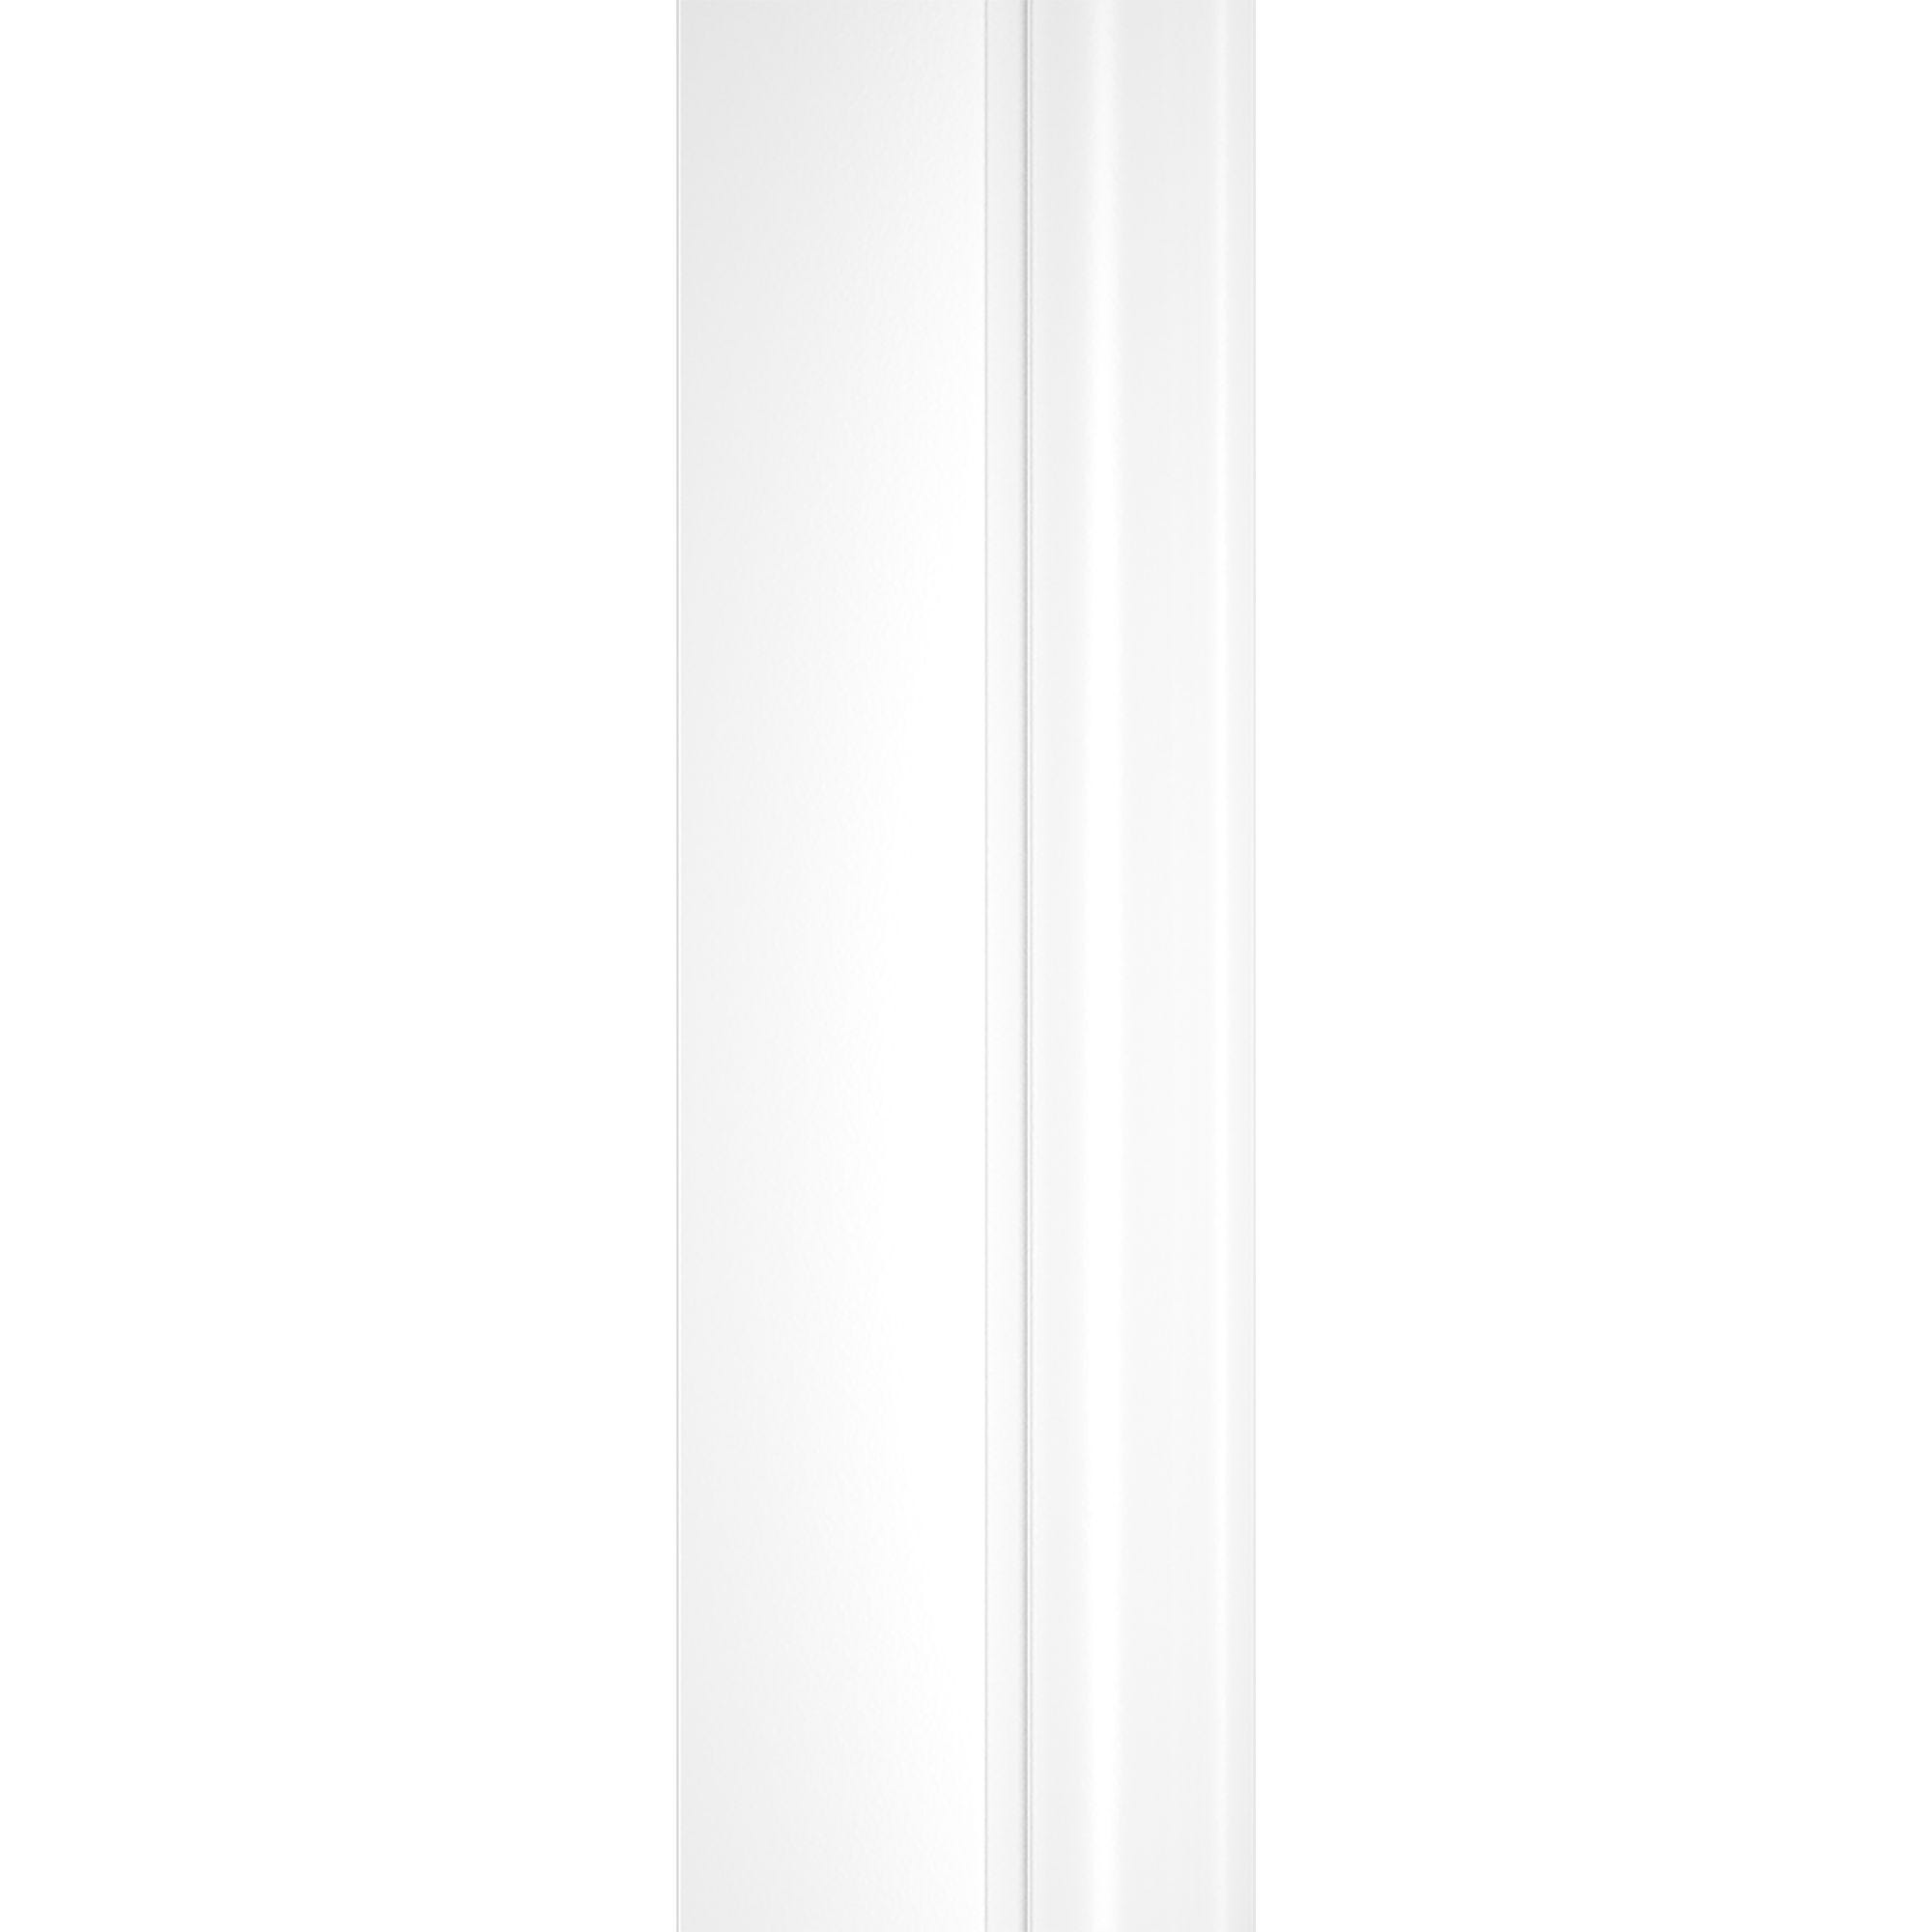 Schulte pare-baignoire mobile rabattable 124 x 130 cm, paroi de baignoire 3 volets, écran de baignoire pivotant, verre transparent, profilé blanc 3